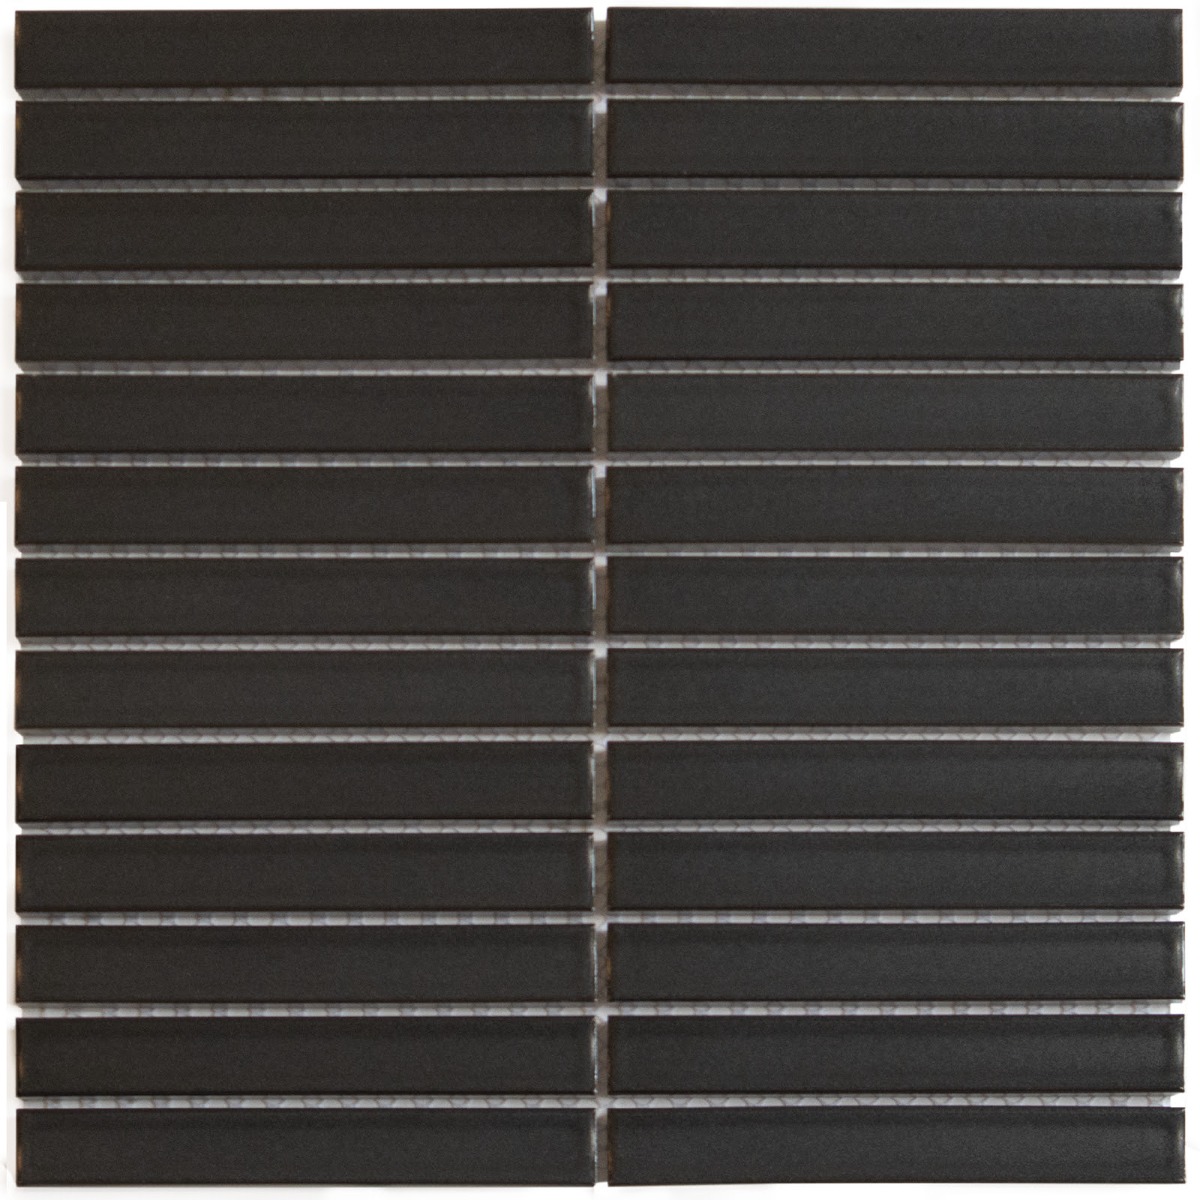 The Mosaic Factory Tegelsample:  Carbon Shades mozaïek tegels 30x30cm grijs mat